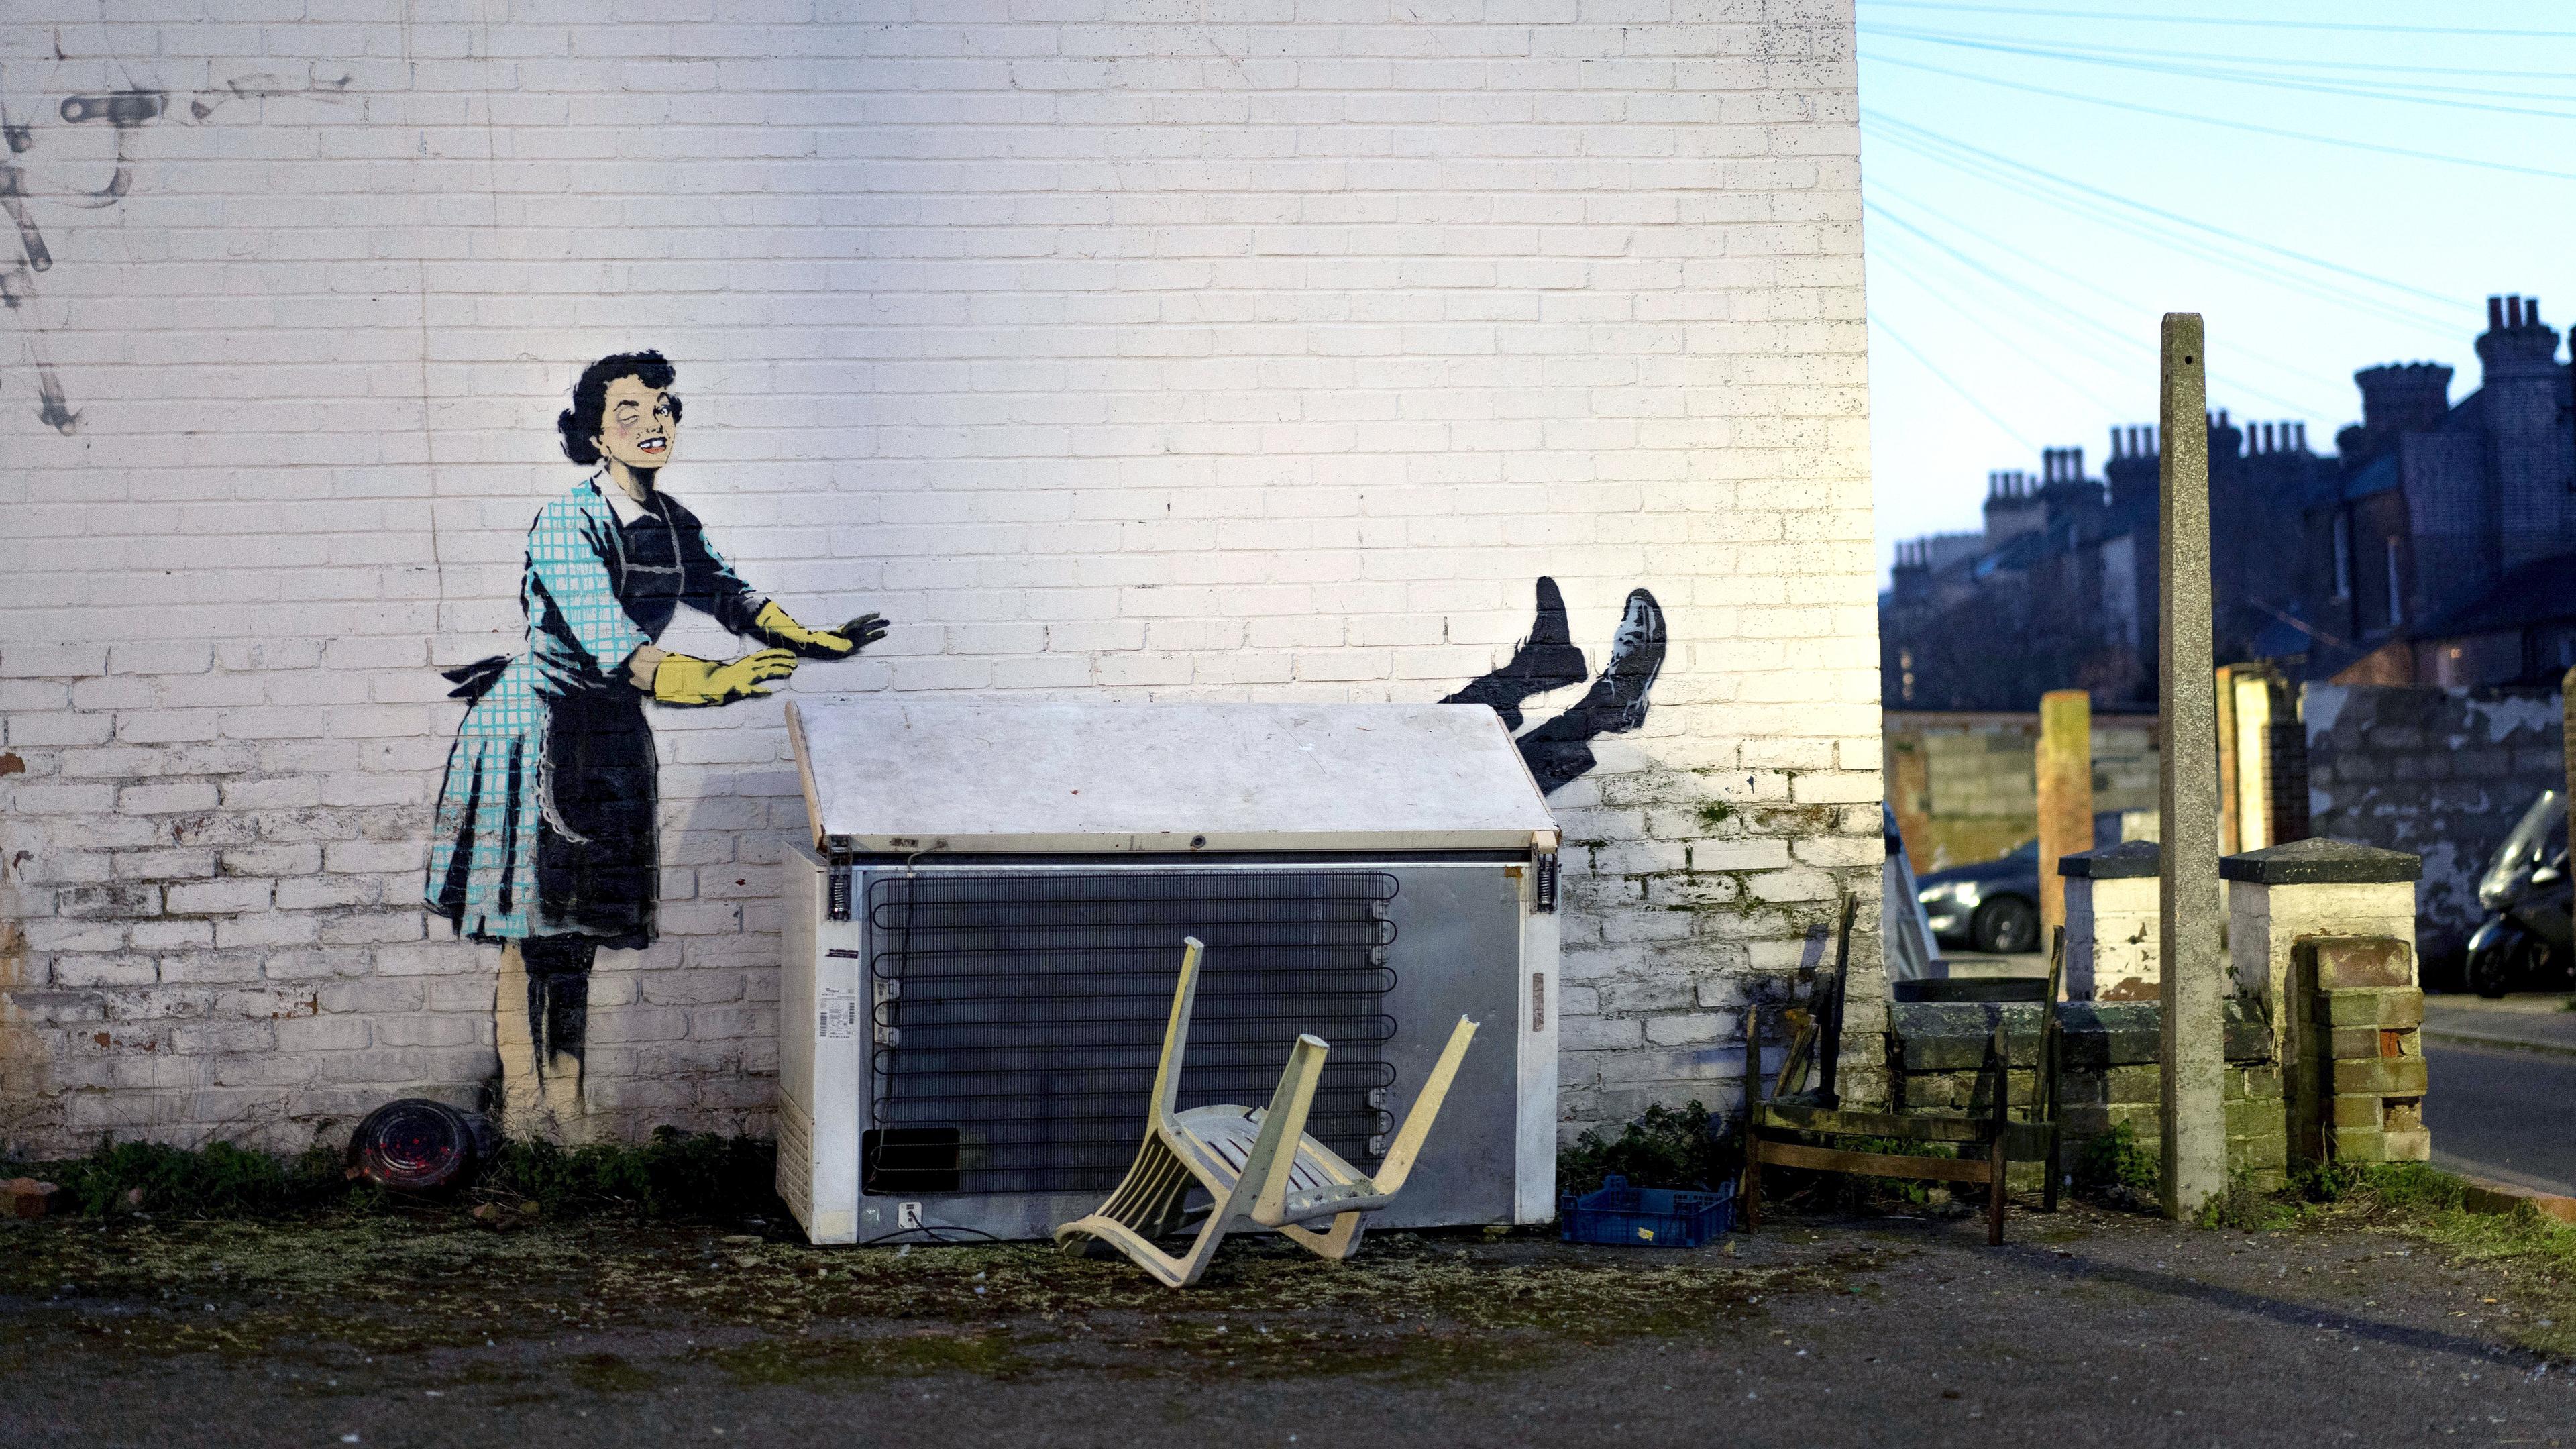 Dieses undatierte Handout-Foto zeigt eines der neuen Werke von Banksy, das eine Hausfrau aus den 1950er Jahren zu zeigen scheint